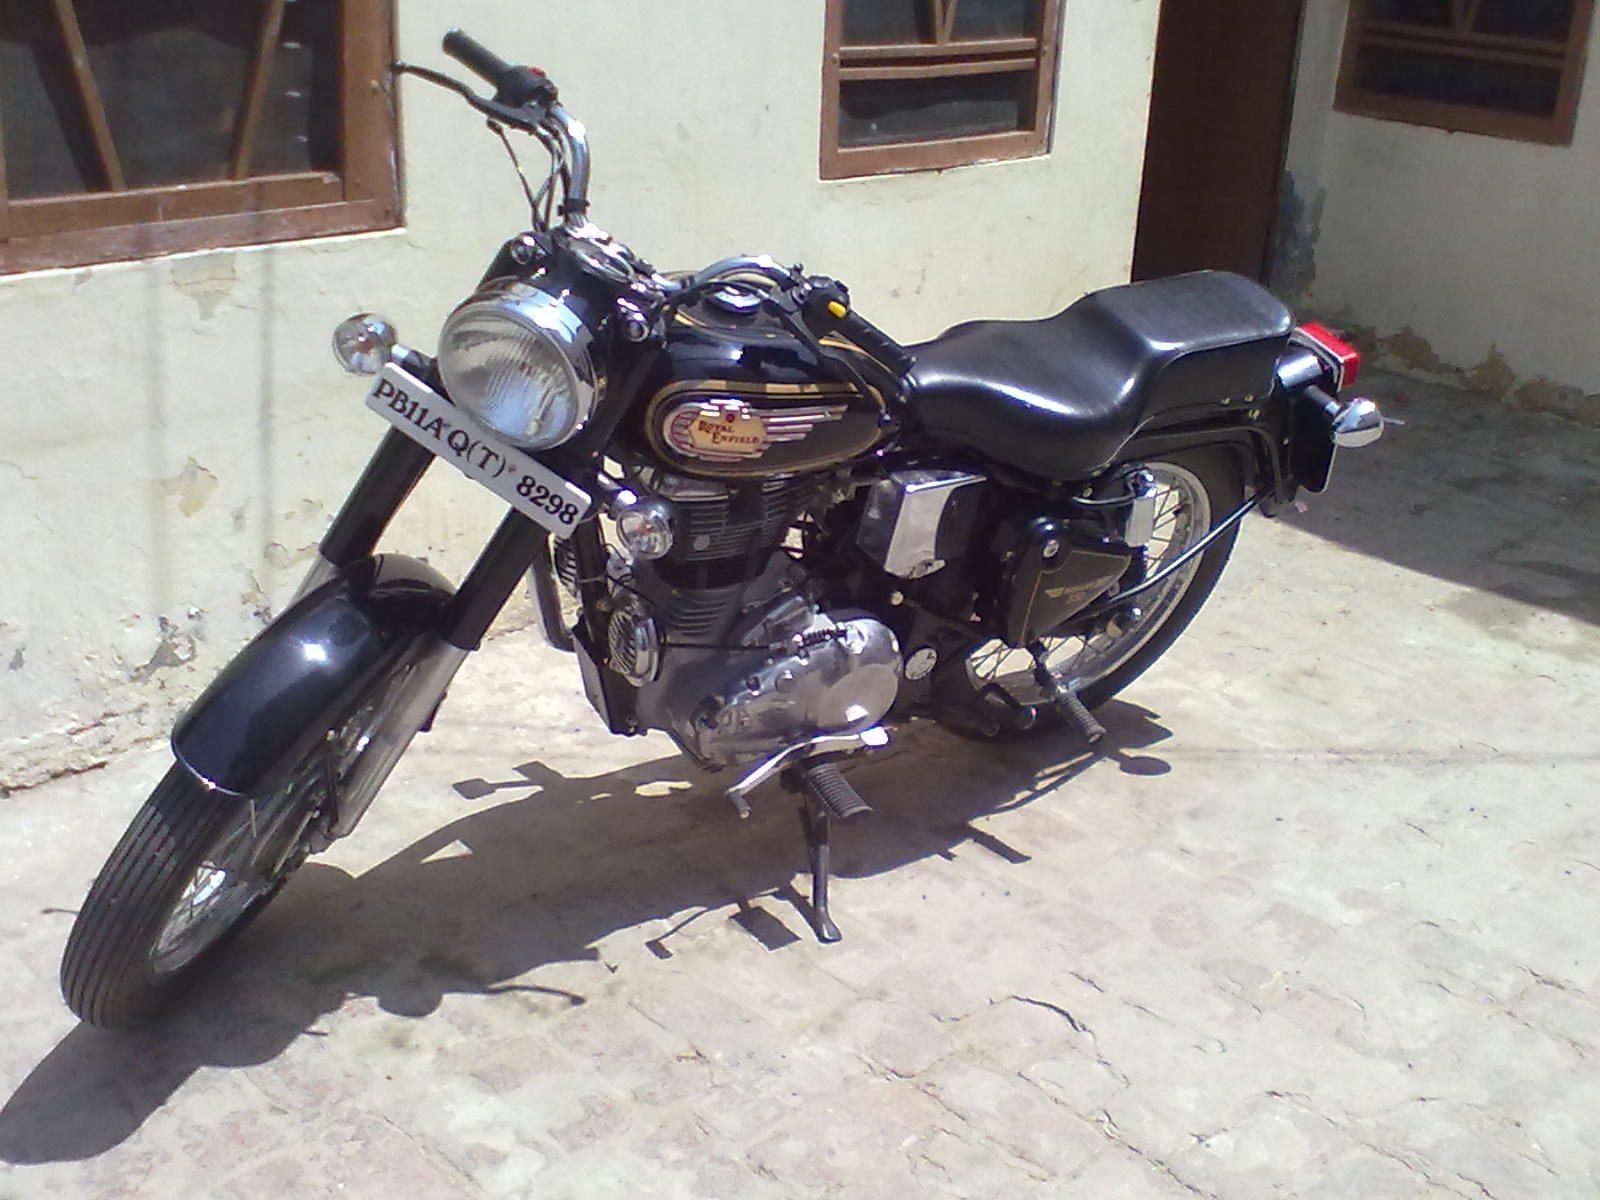 punjabi bullet wallpapers,land vehicle,motorcycle,vehicle,alloy wheel,motor vehicle